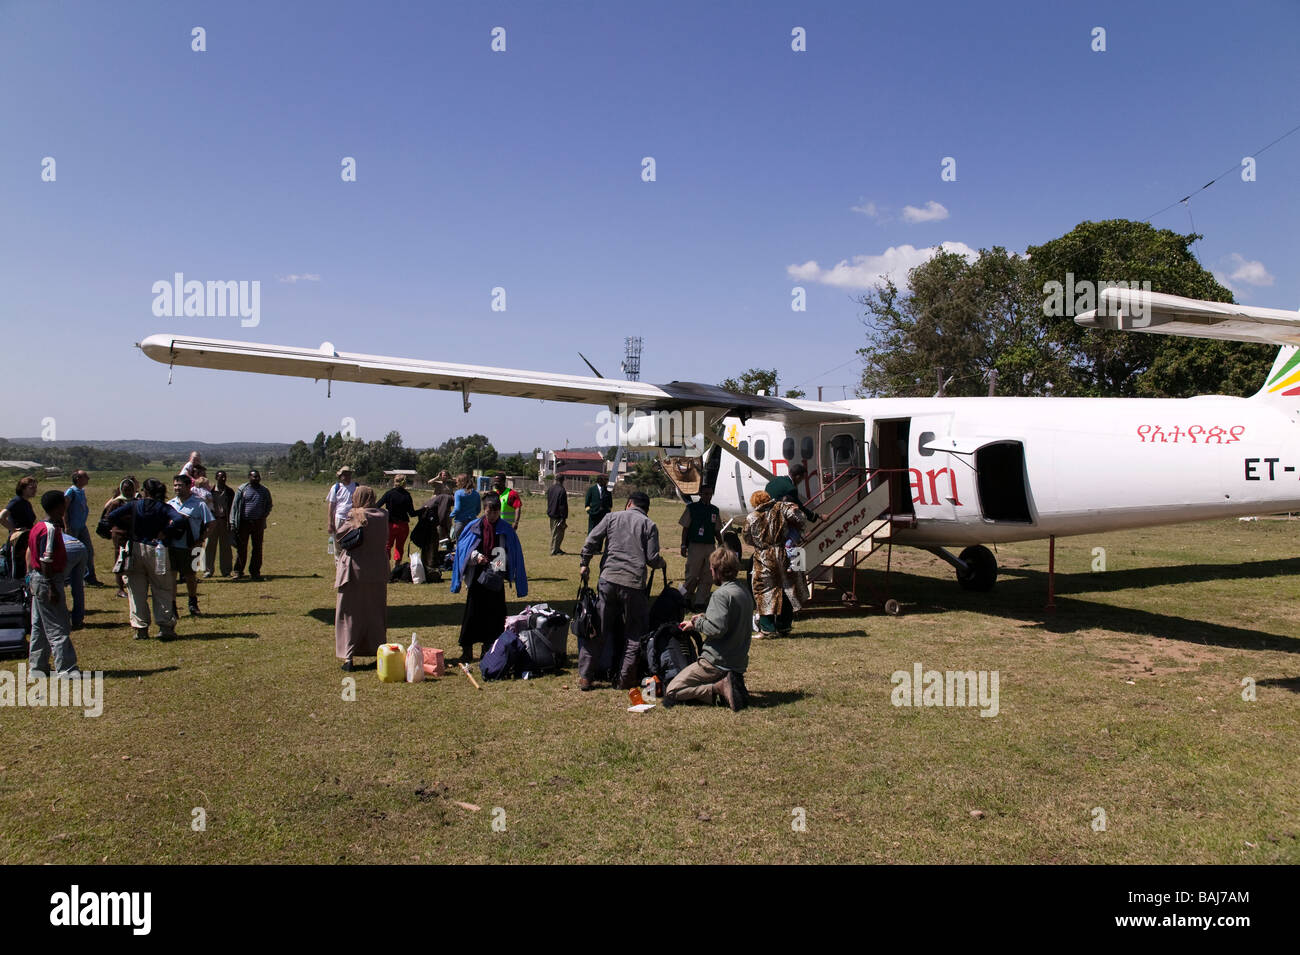 Airplane Jinka Ethiopia Stock Photo